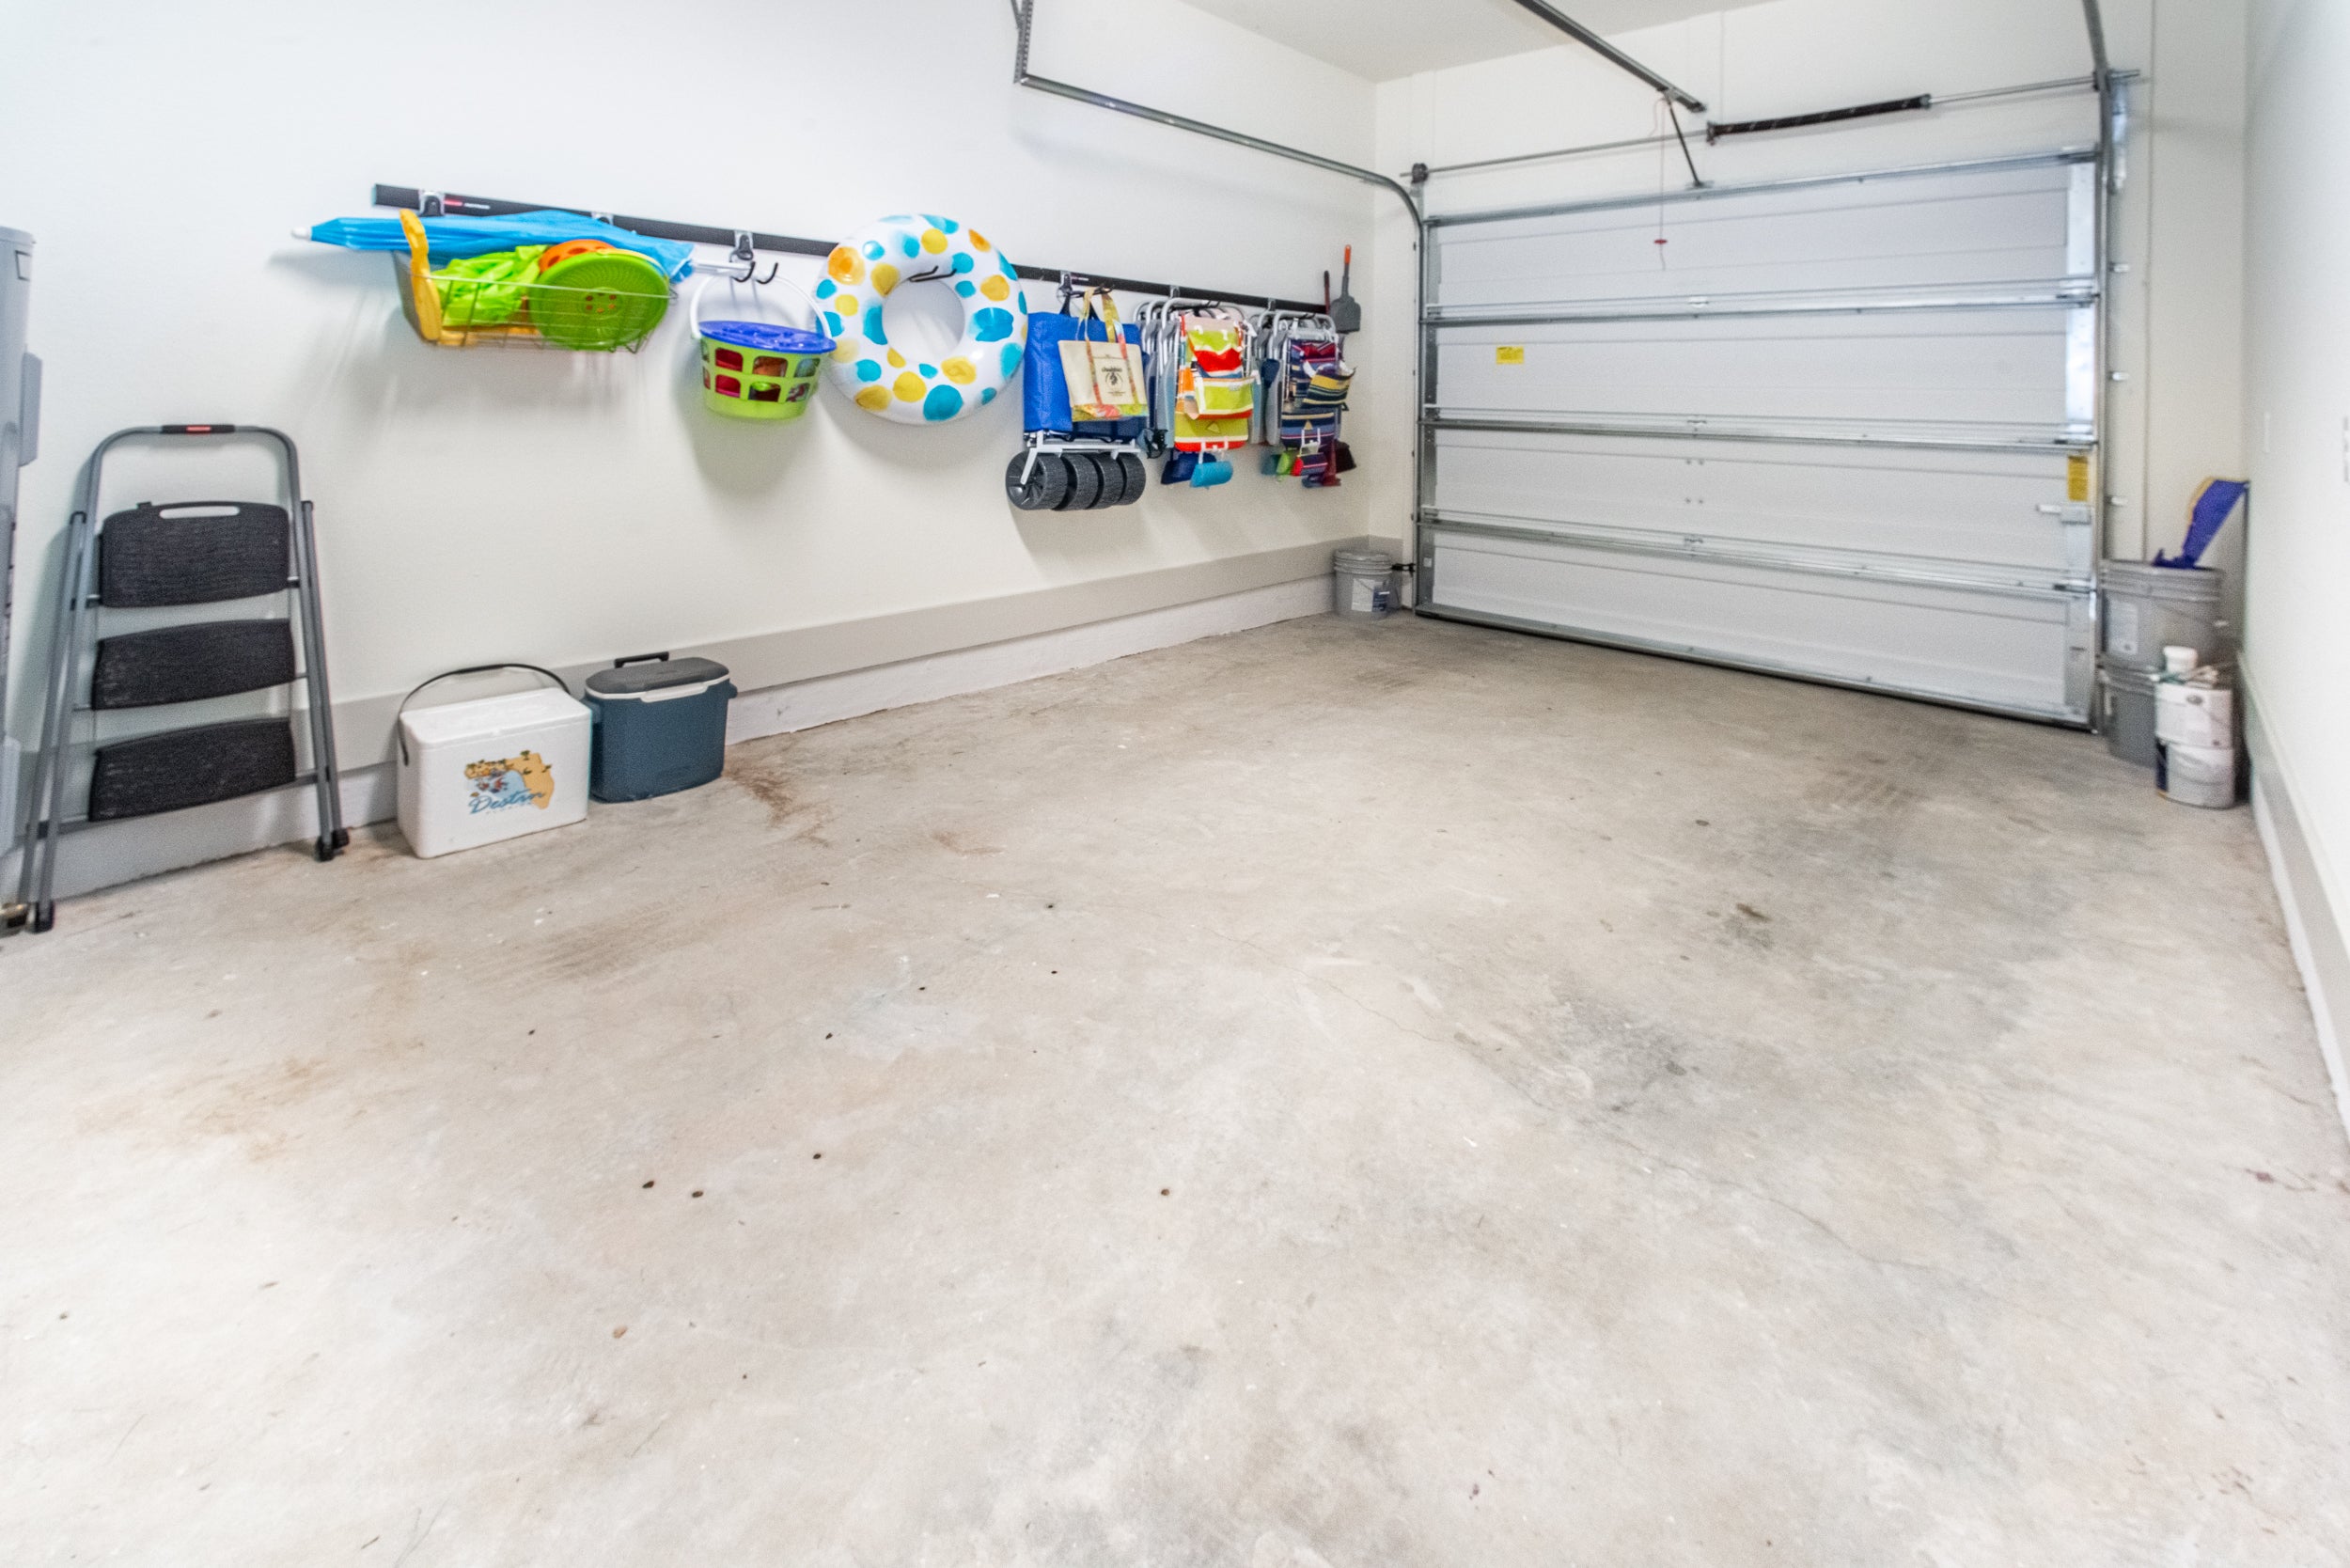 Garage space